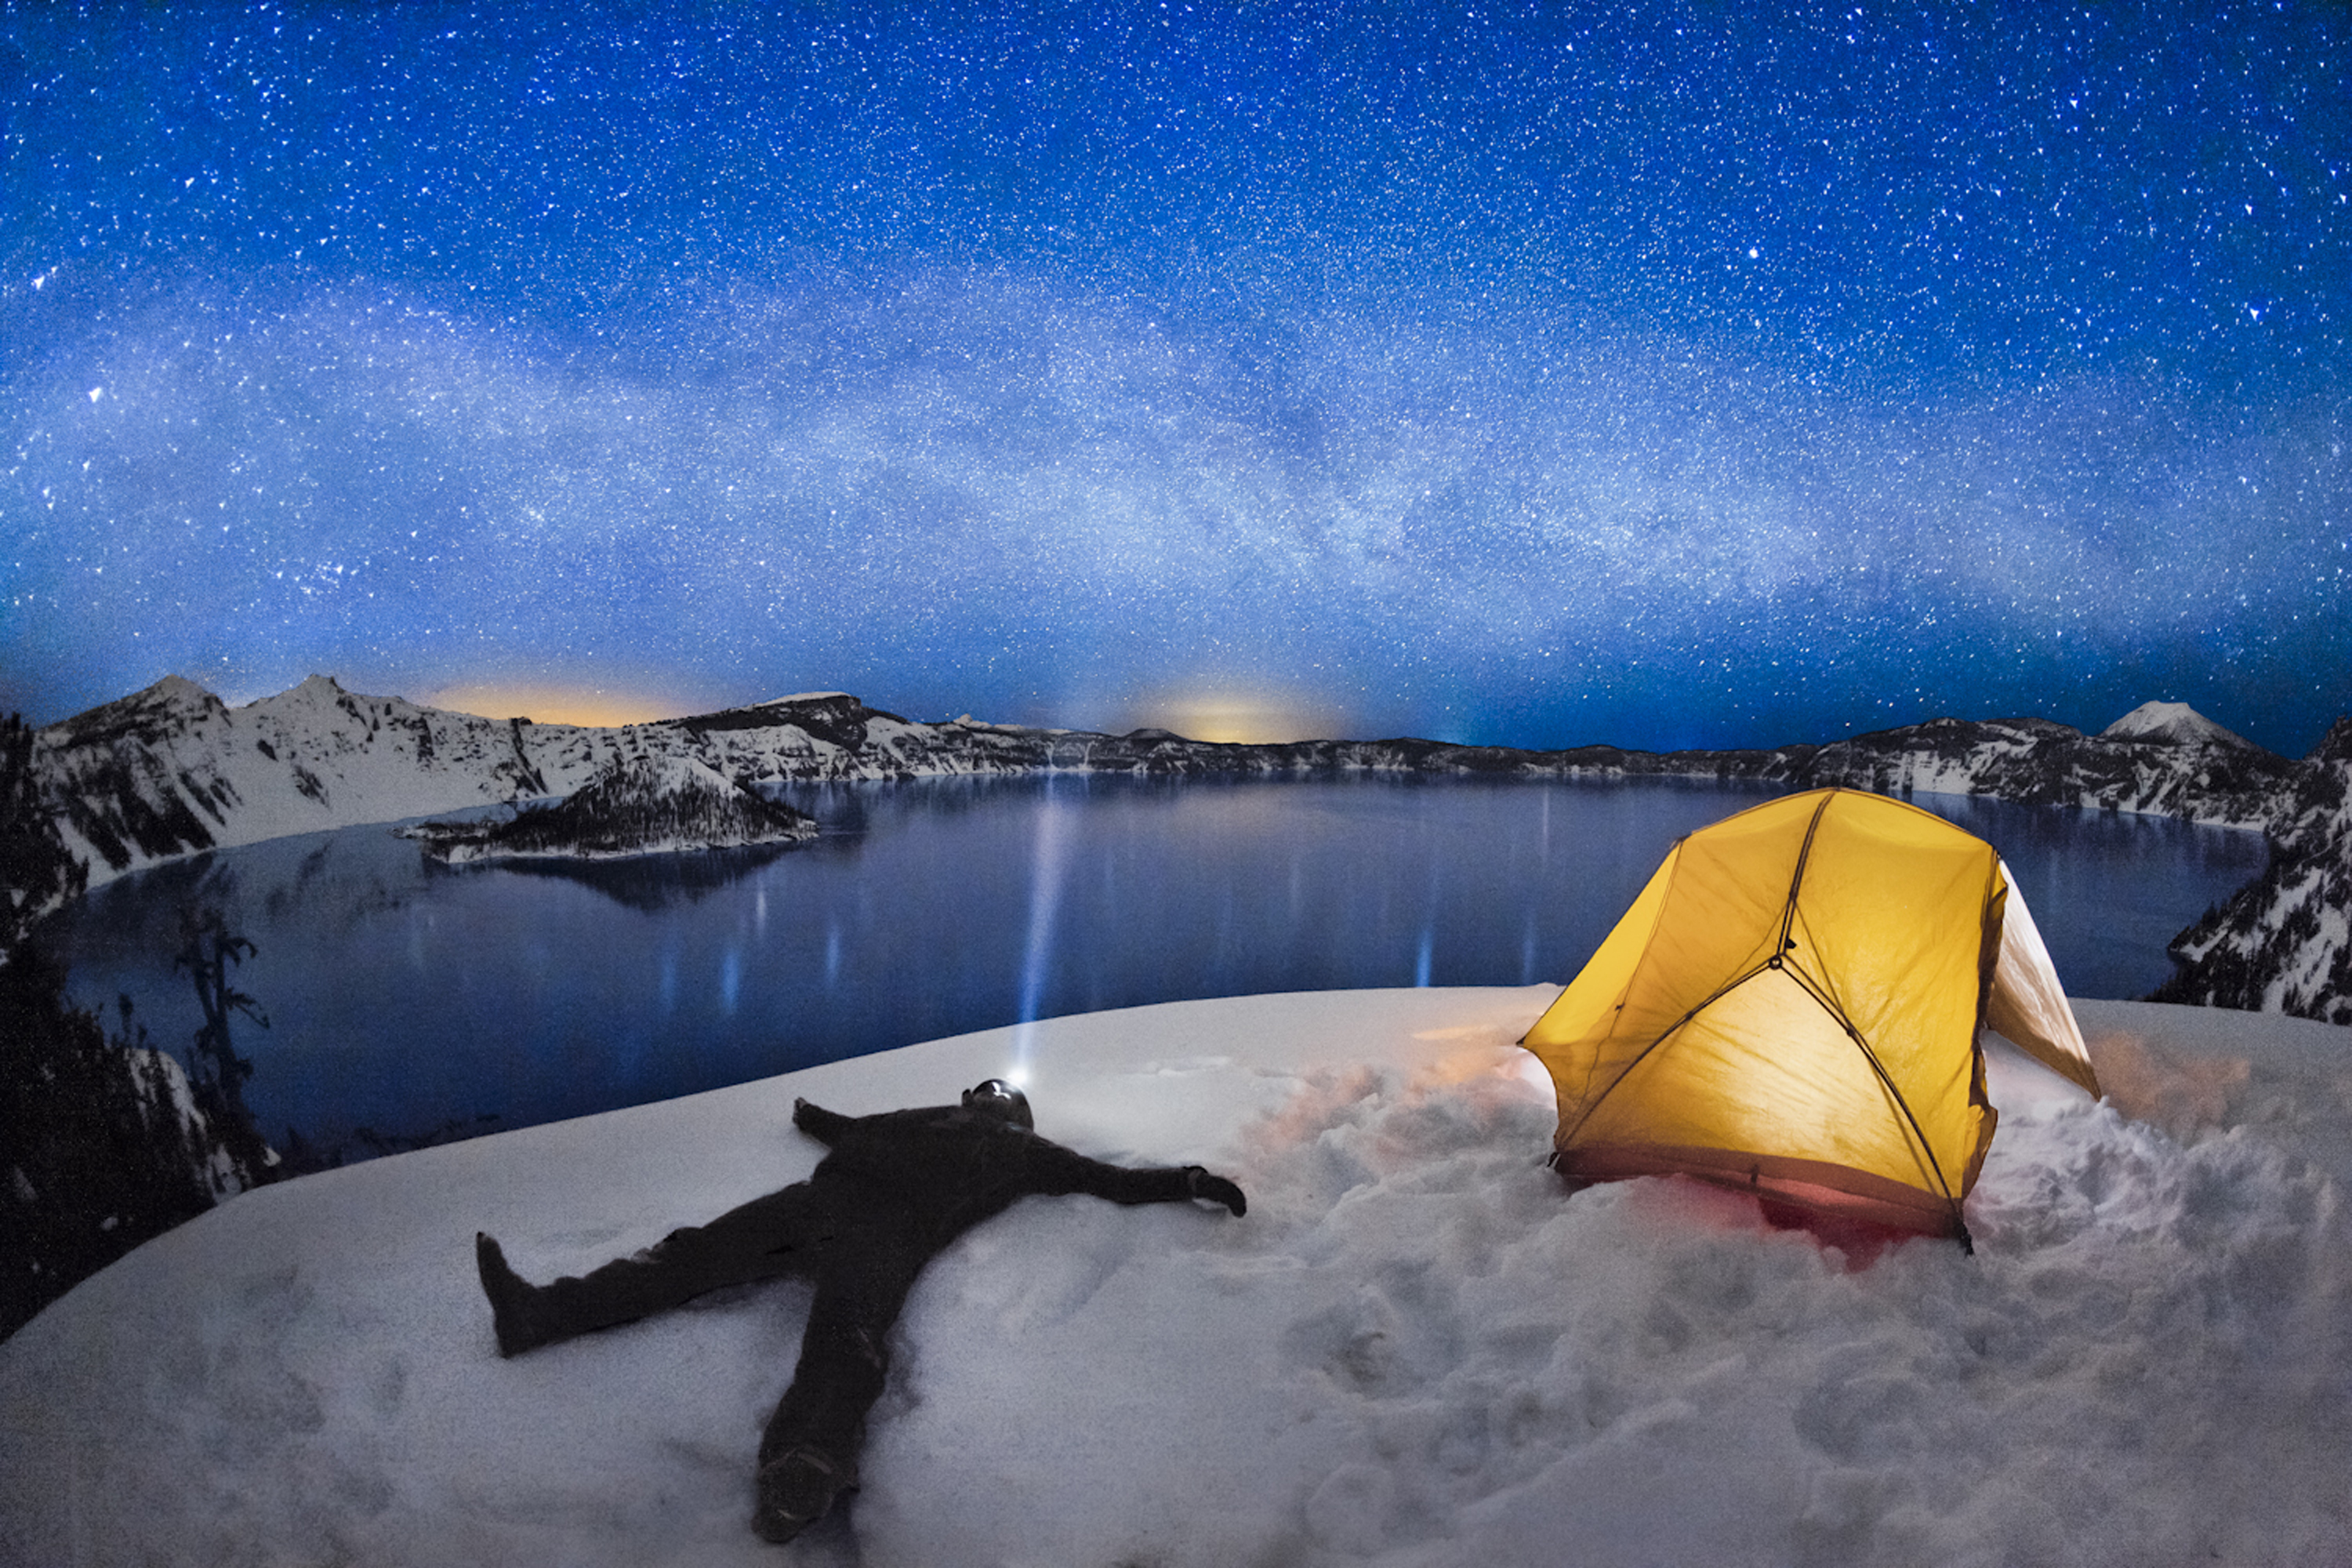 Посветить время. Палатка ночью. Палатка под звездным небом. Палатка в горах ночью. Палатка на фоне звездного неба.